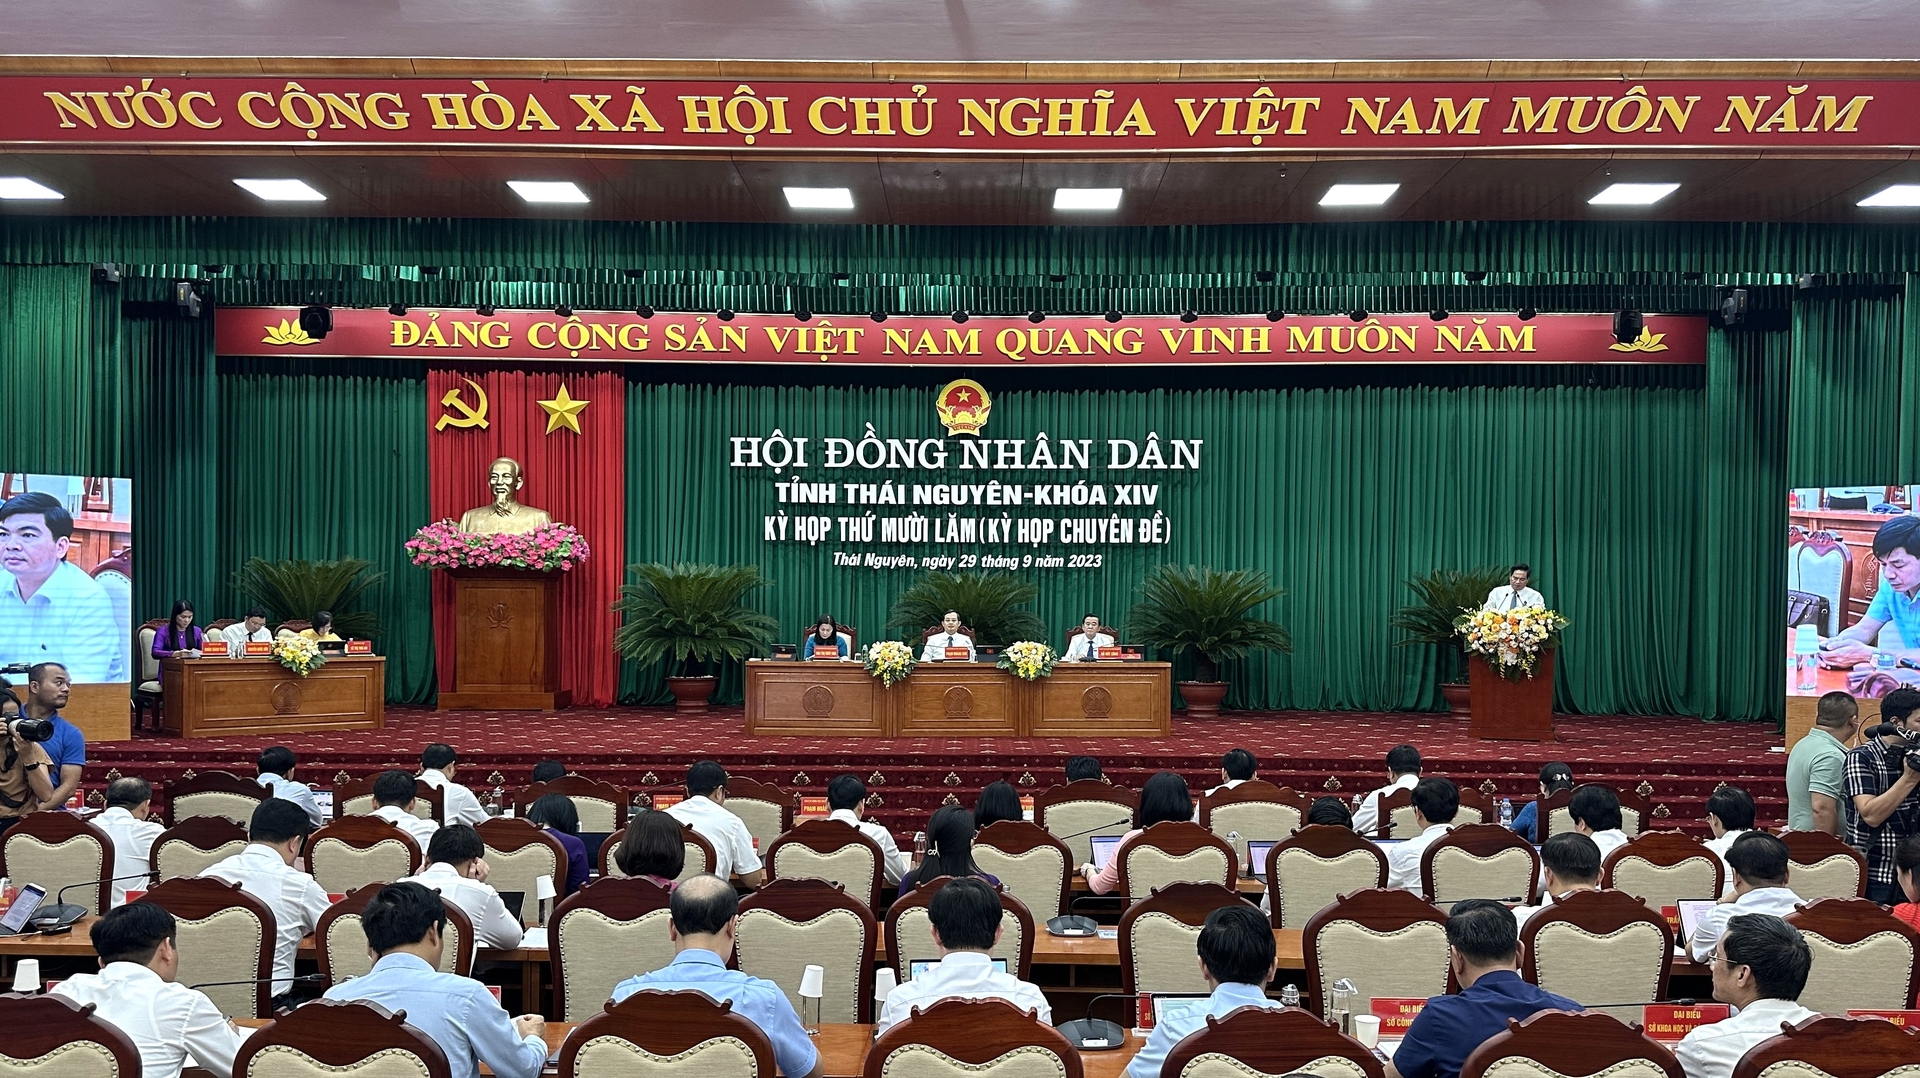 Kỳ họp thứ 15 - Kỳ họp chuyên đề Hội đồng Nhân dân tỉnh Thái Nguyên Khóa XIV. Ảnh: Quang Linh.